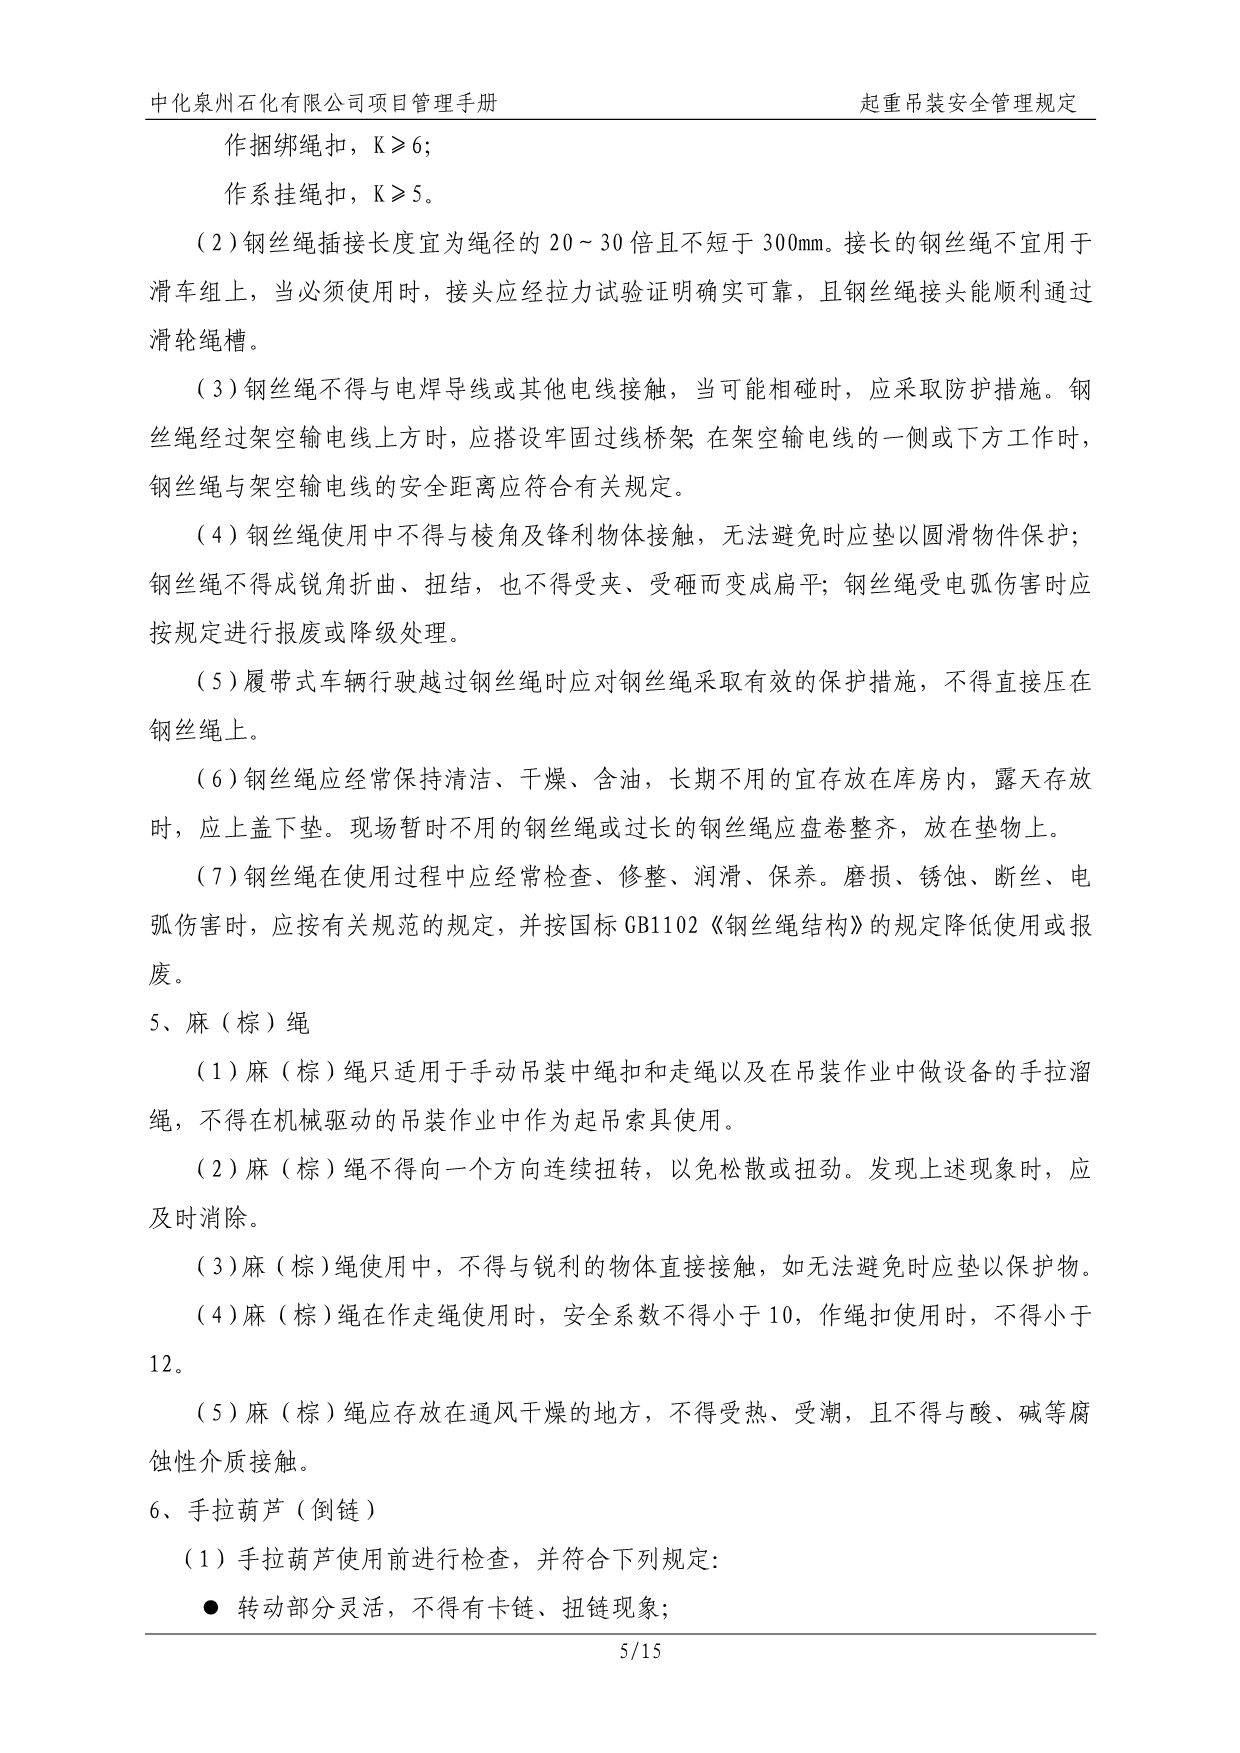 中化泉州石化有限公司项目管理手册-29-起重吊装安全管理规定(2012年9月17日发布)讲解_第5页